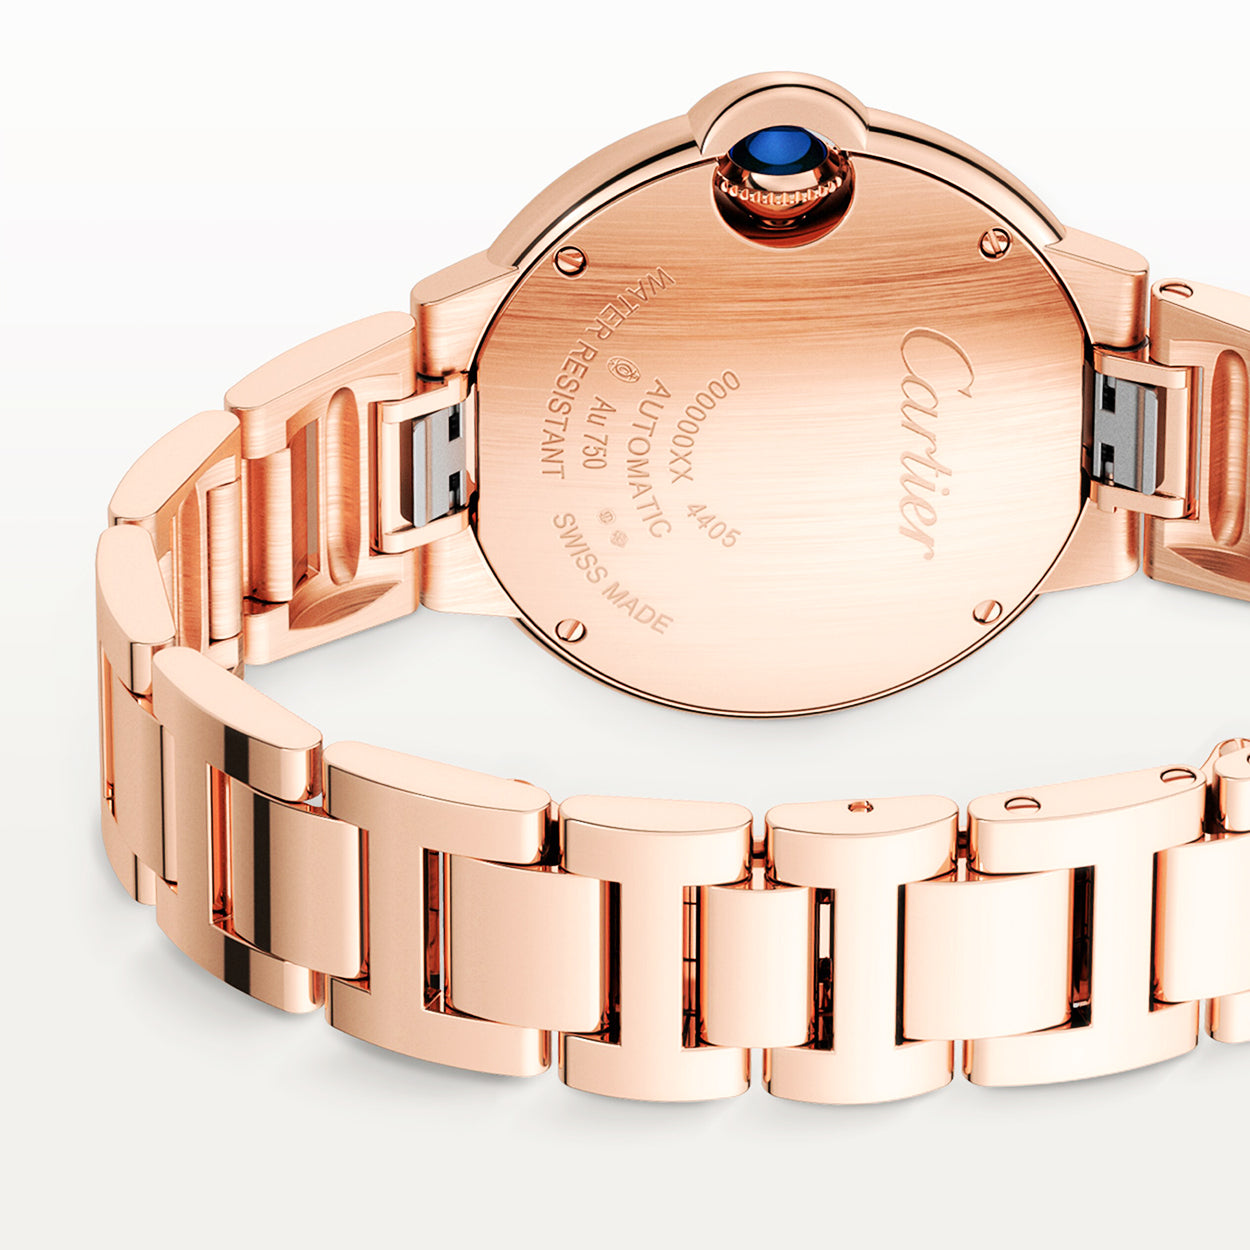 Ballon Bleu de Cartier 18ct Rose Gold Diamond Dial Bracelet Watch